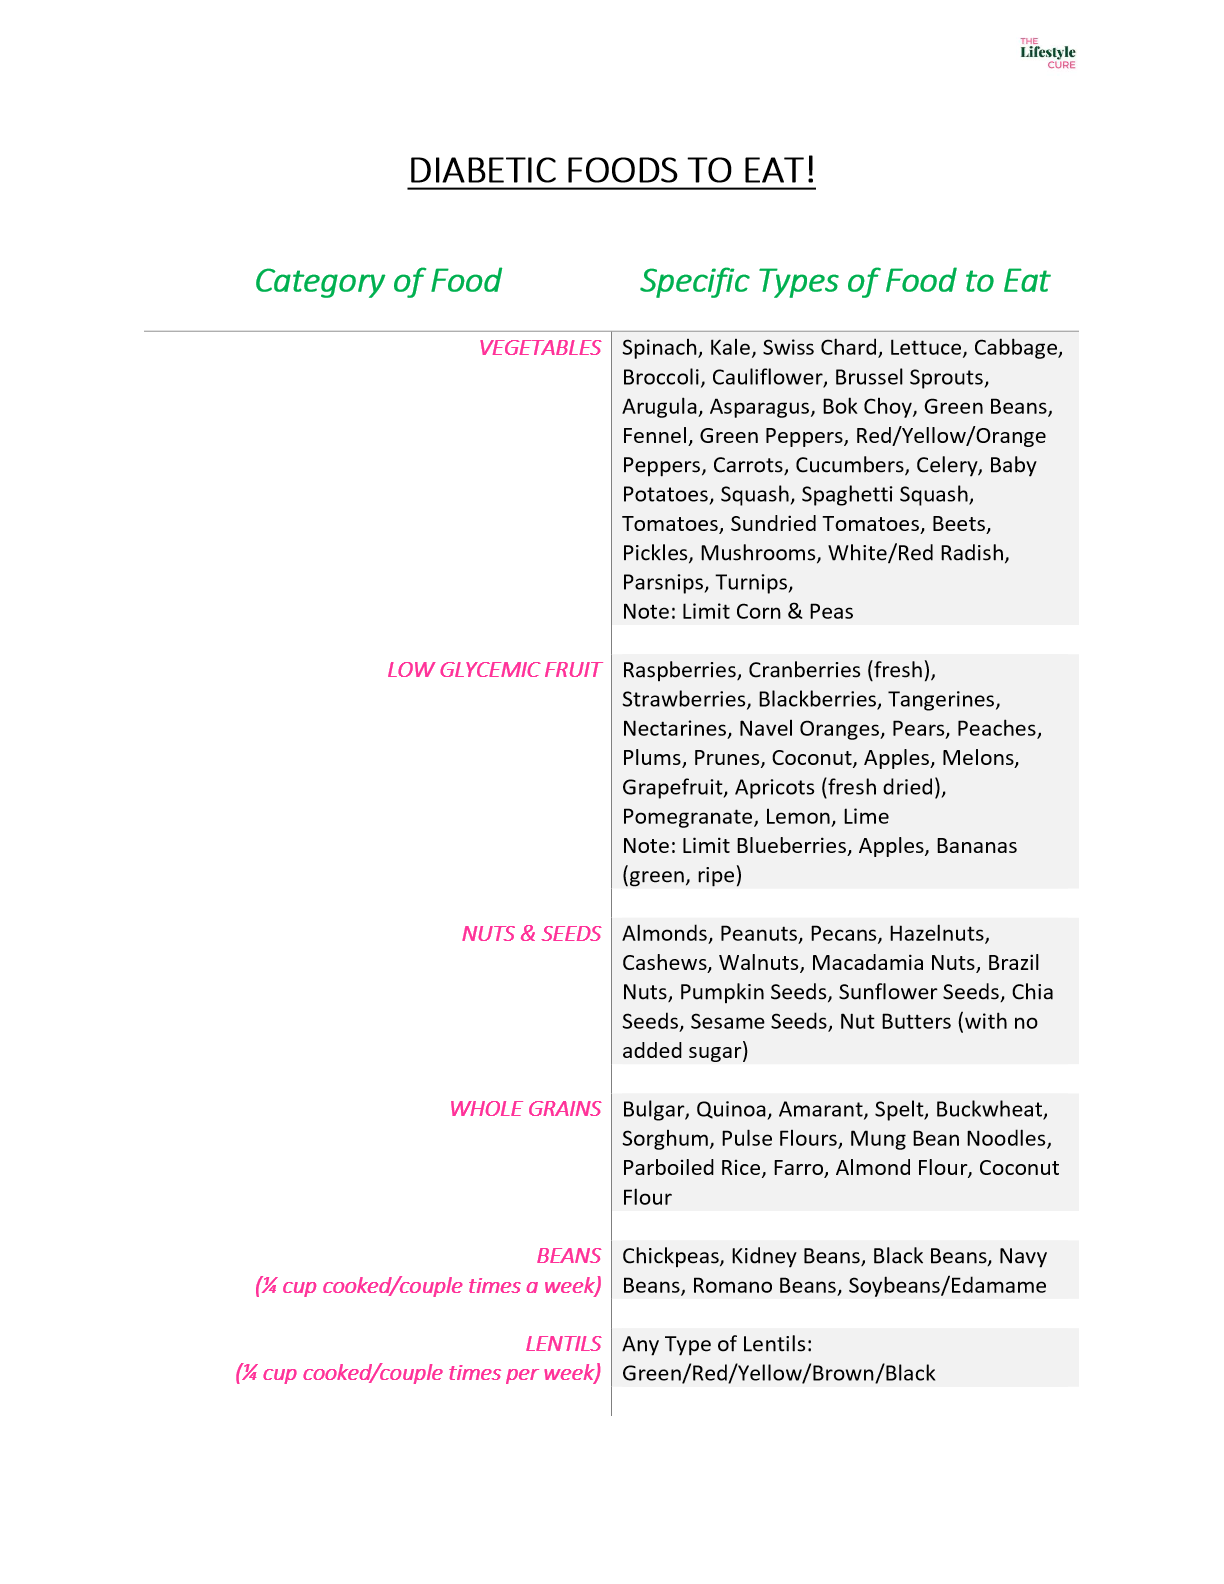 diabetic food list pdf what to eat avoid